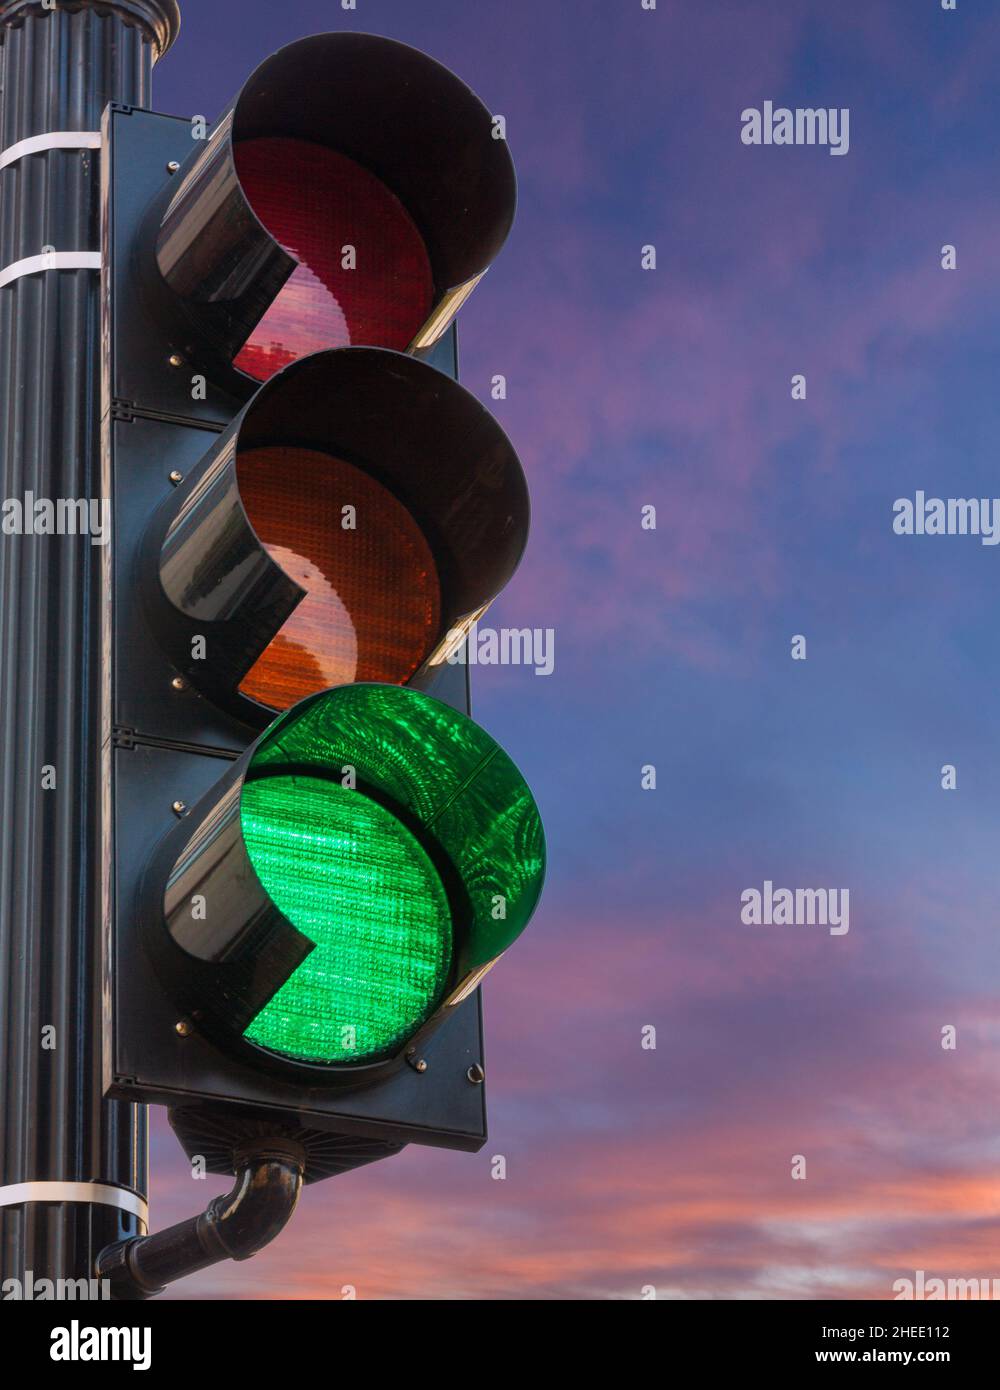 Concetto di speranza e positività con un segnale di traffico sul verde contro un'alba o tramonto Foto Stock